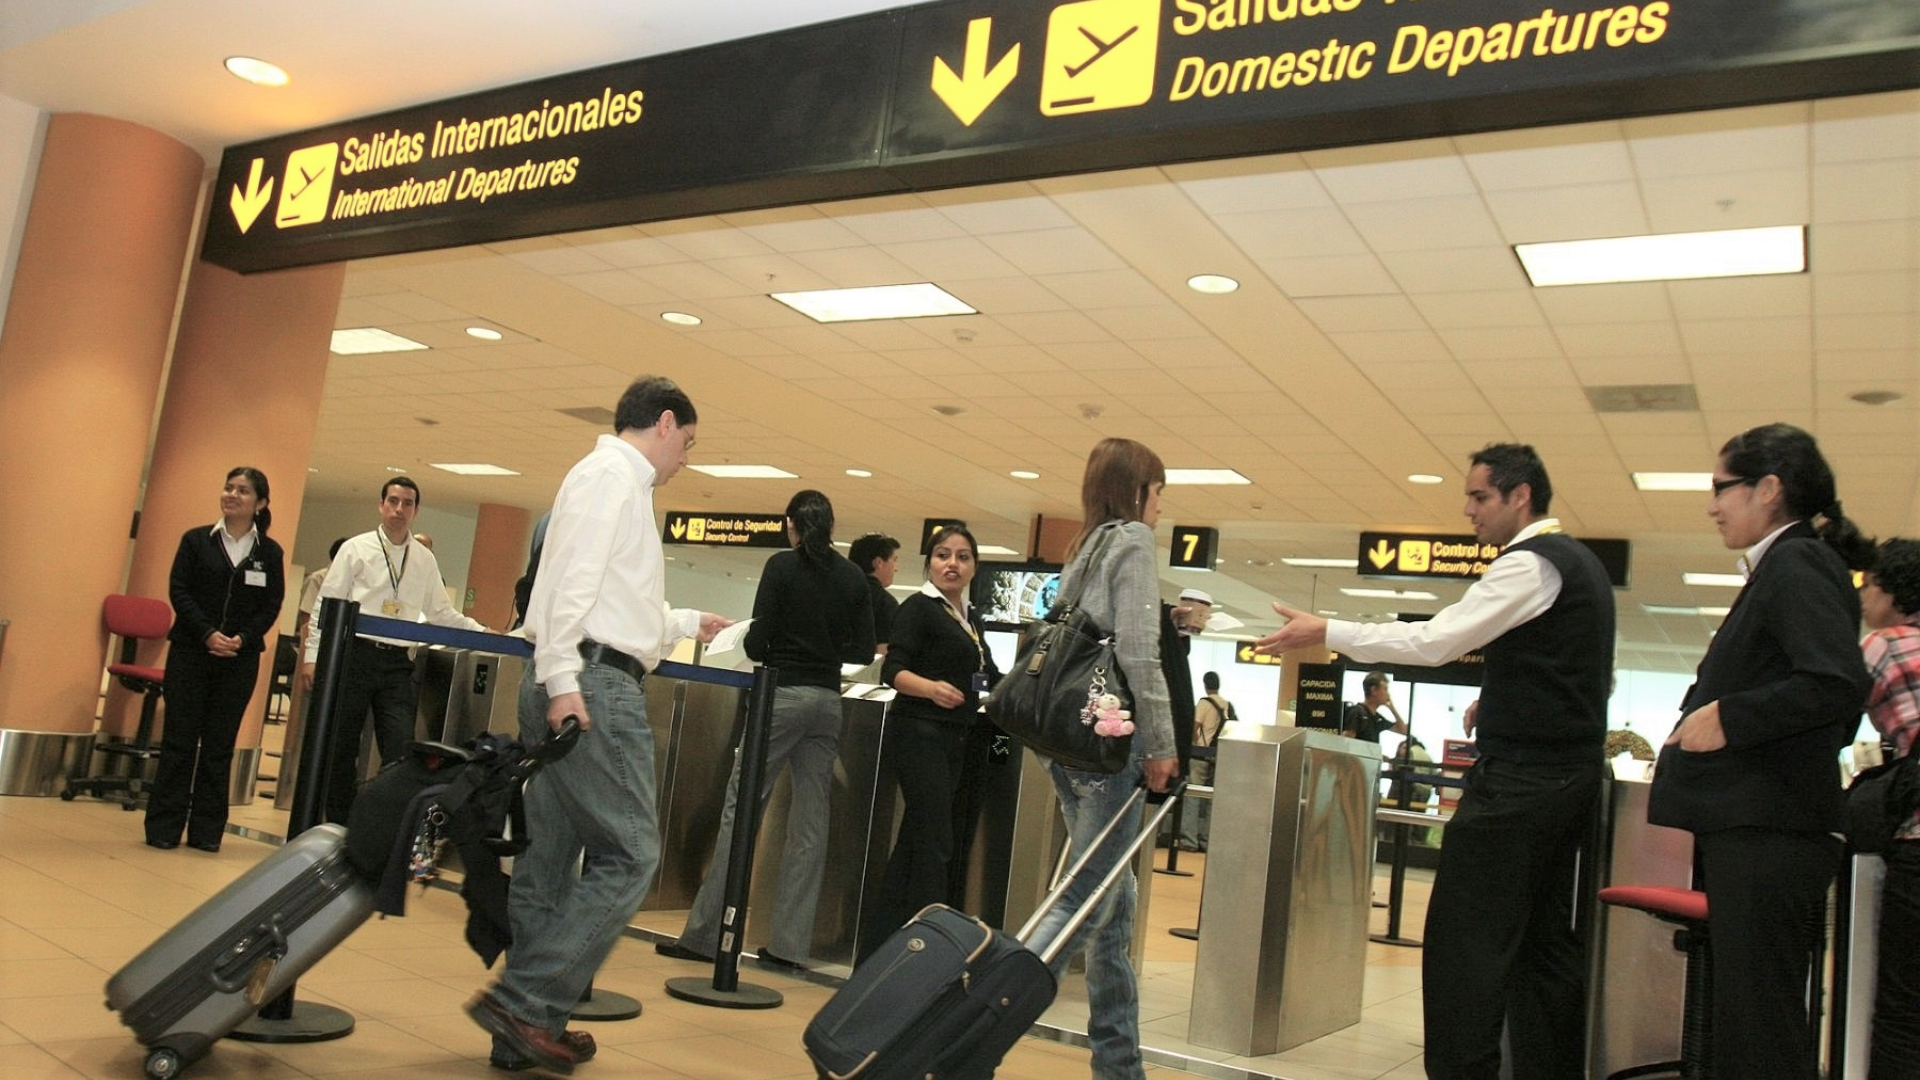 Migraciones: desde el 29 de mayo se eliminará el sellado de pasaportes en todos los aeropuertos del Perú